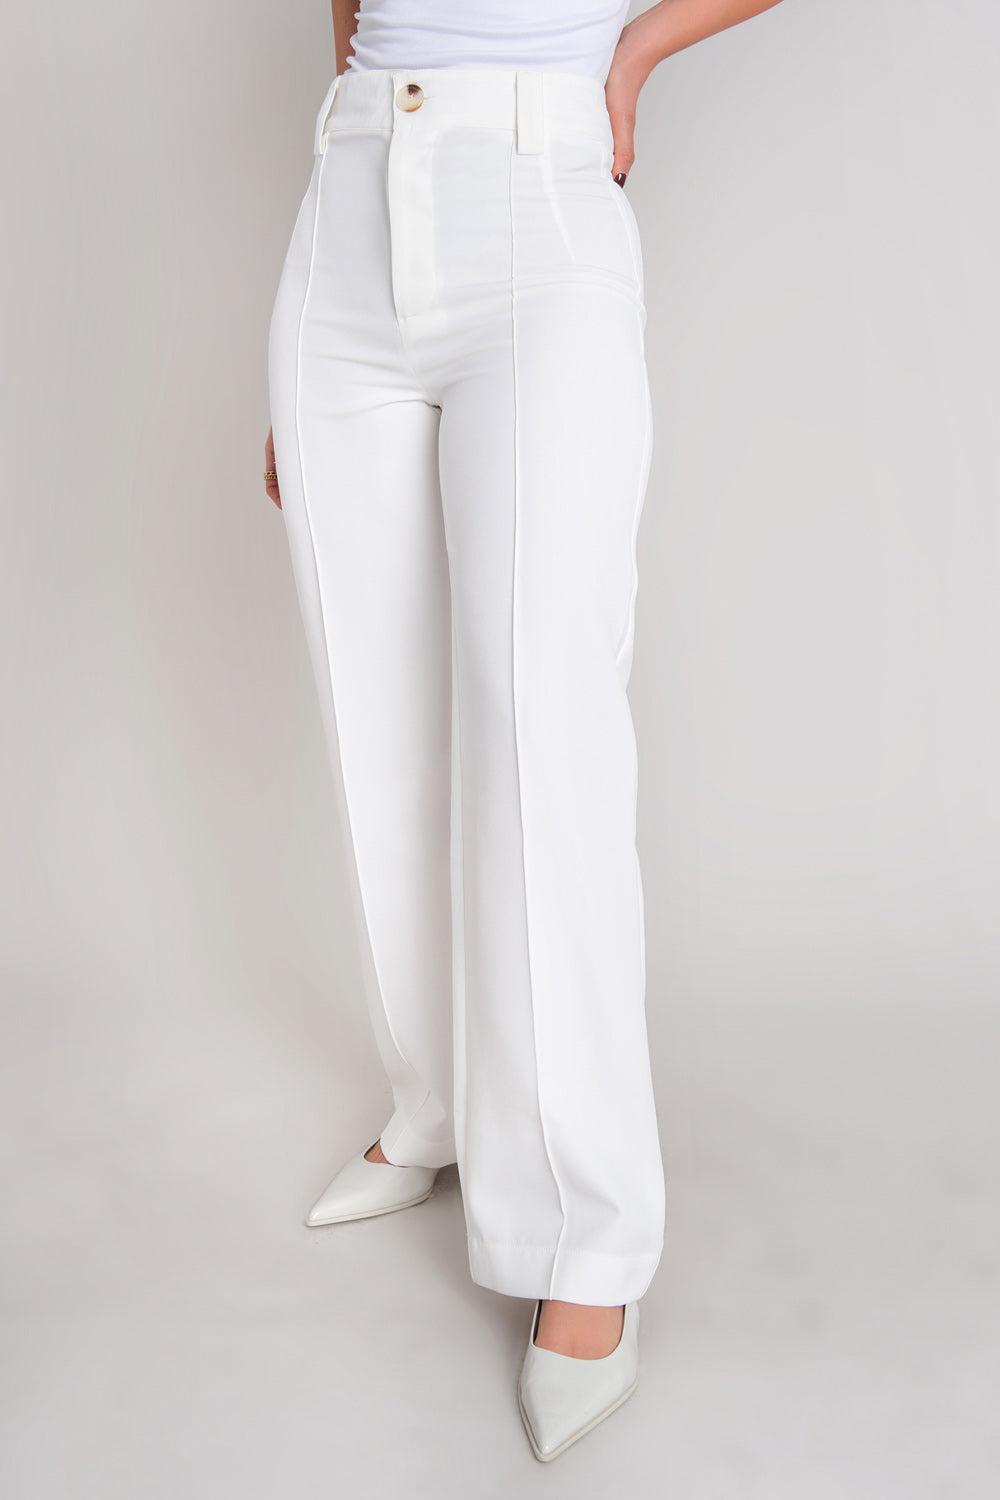 Pantalón ajustado de fit recto, cintura alta con pretina y trabillas, detalle de raya frontal, cierre con botón en contraste y cremallera oculta.